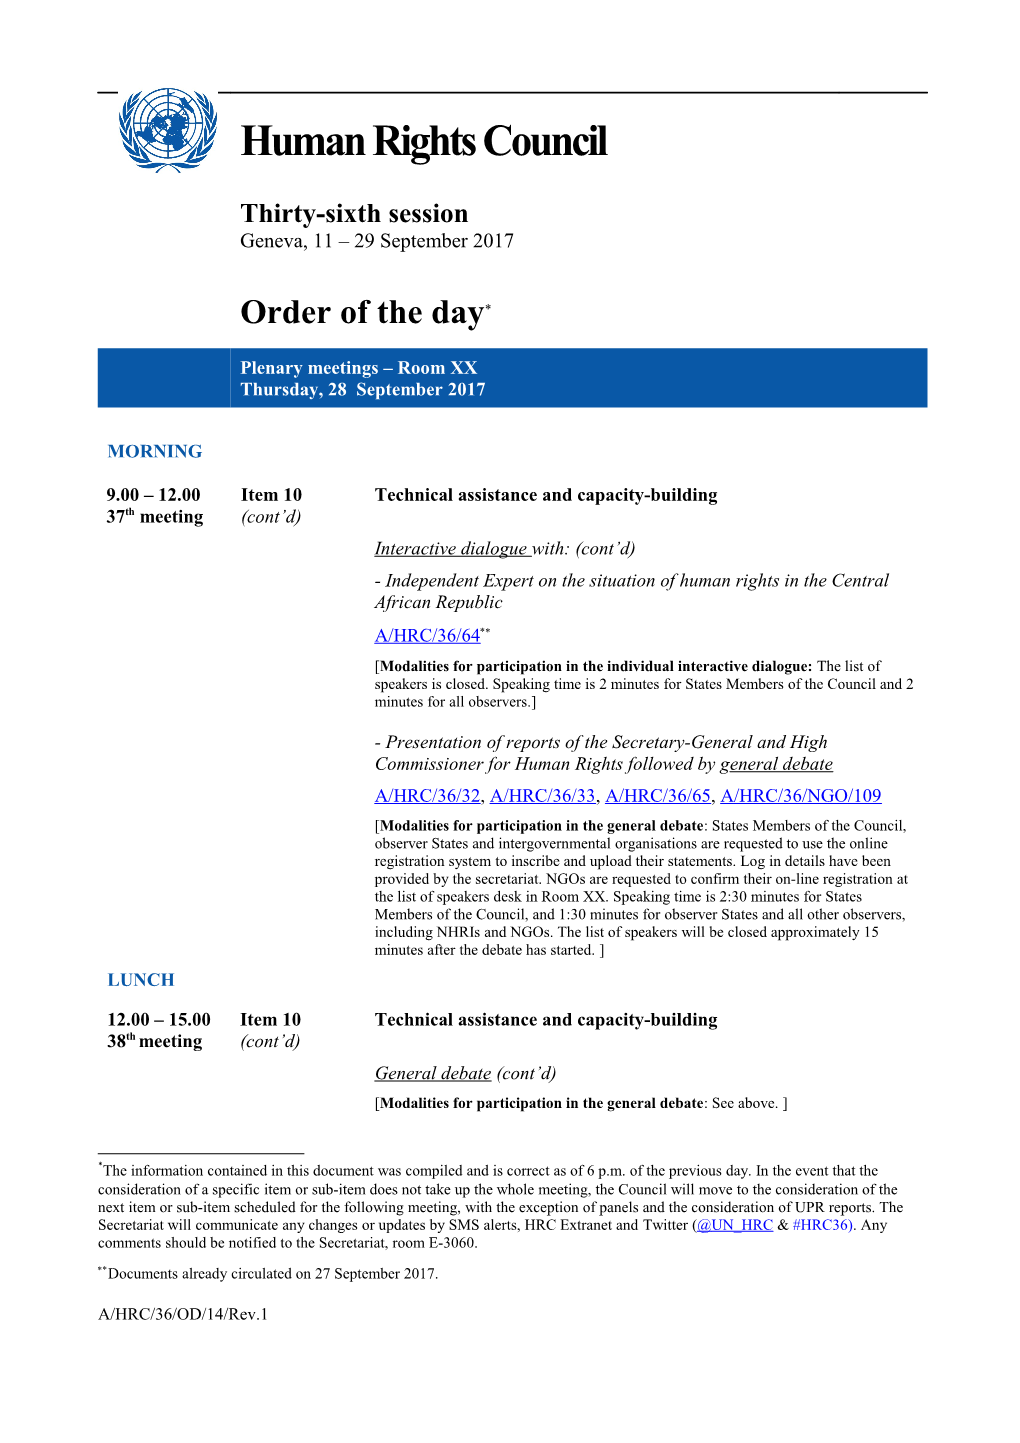 Order of the Day, Thursday, 28 September 2017